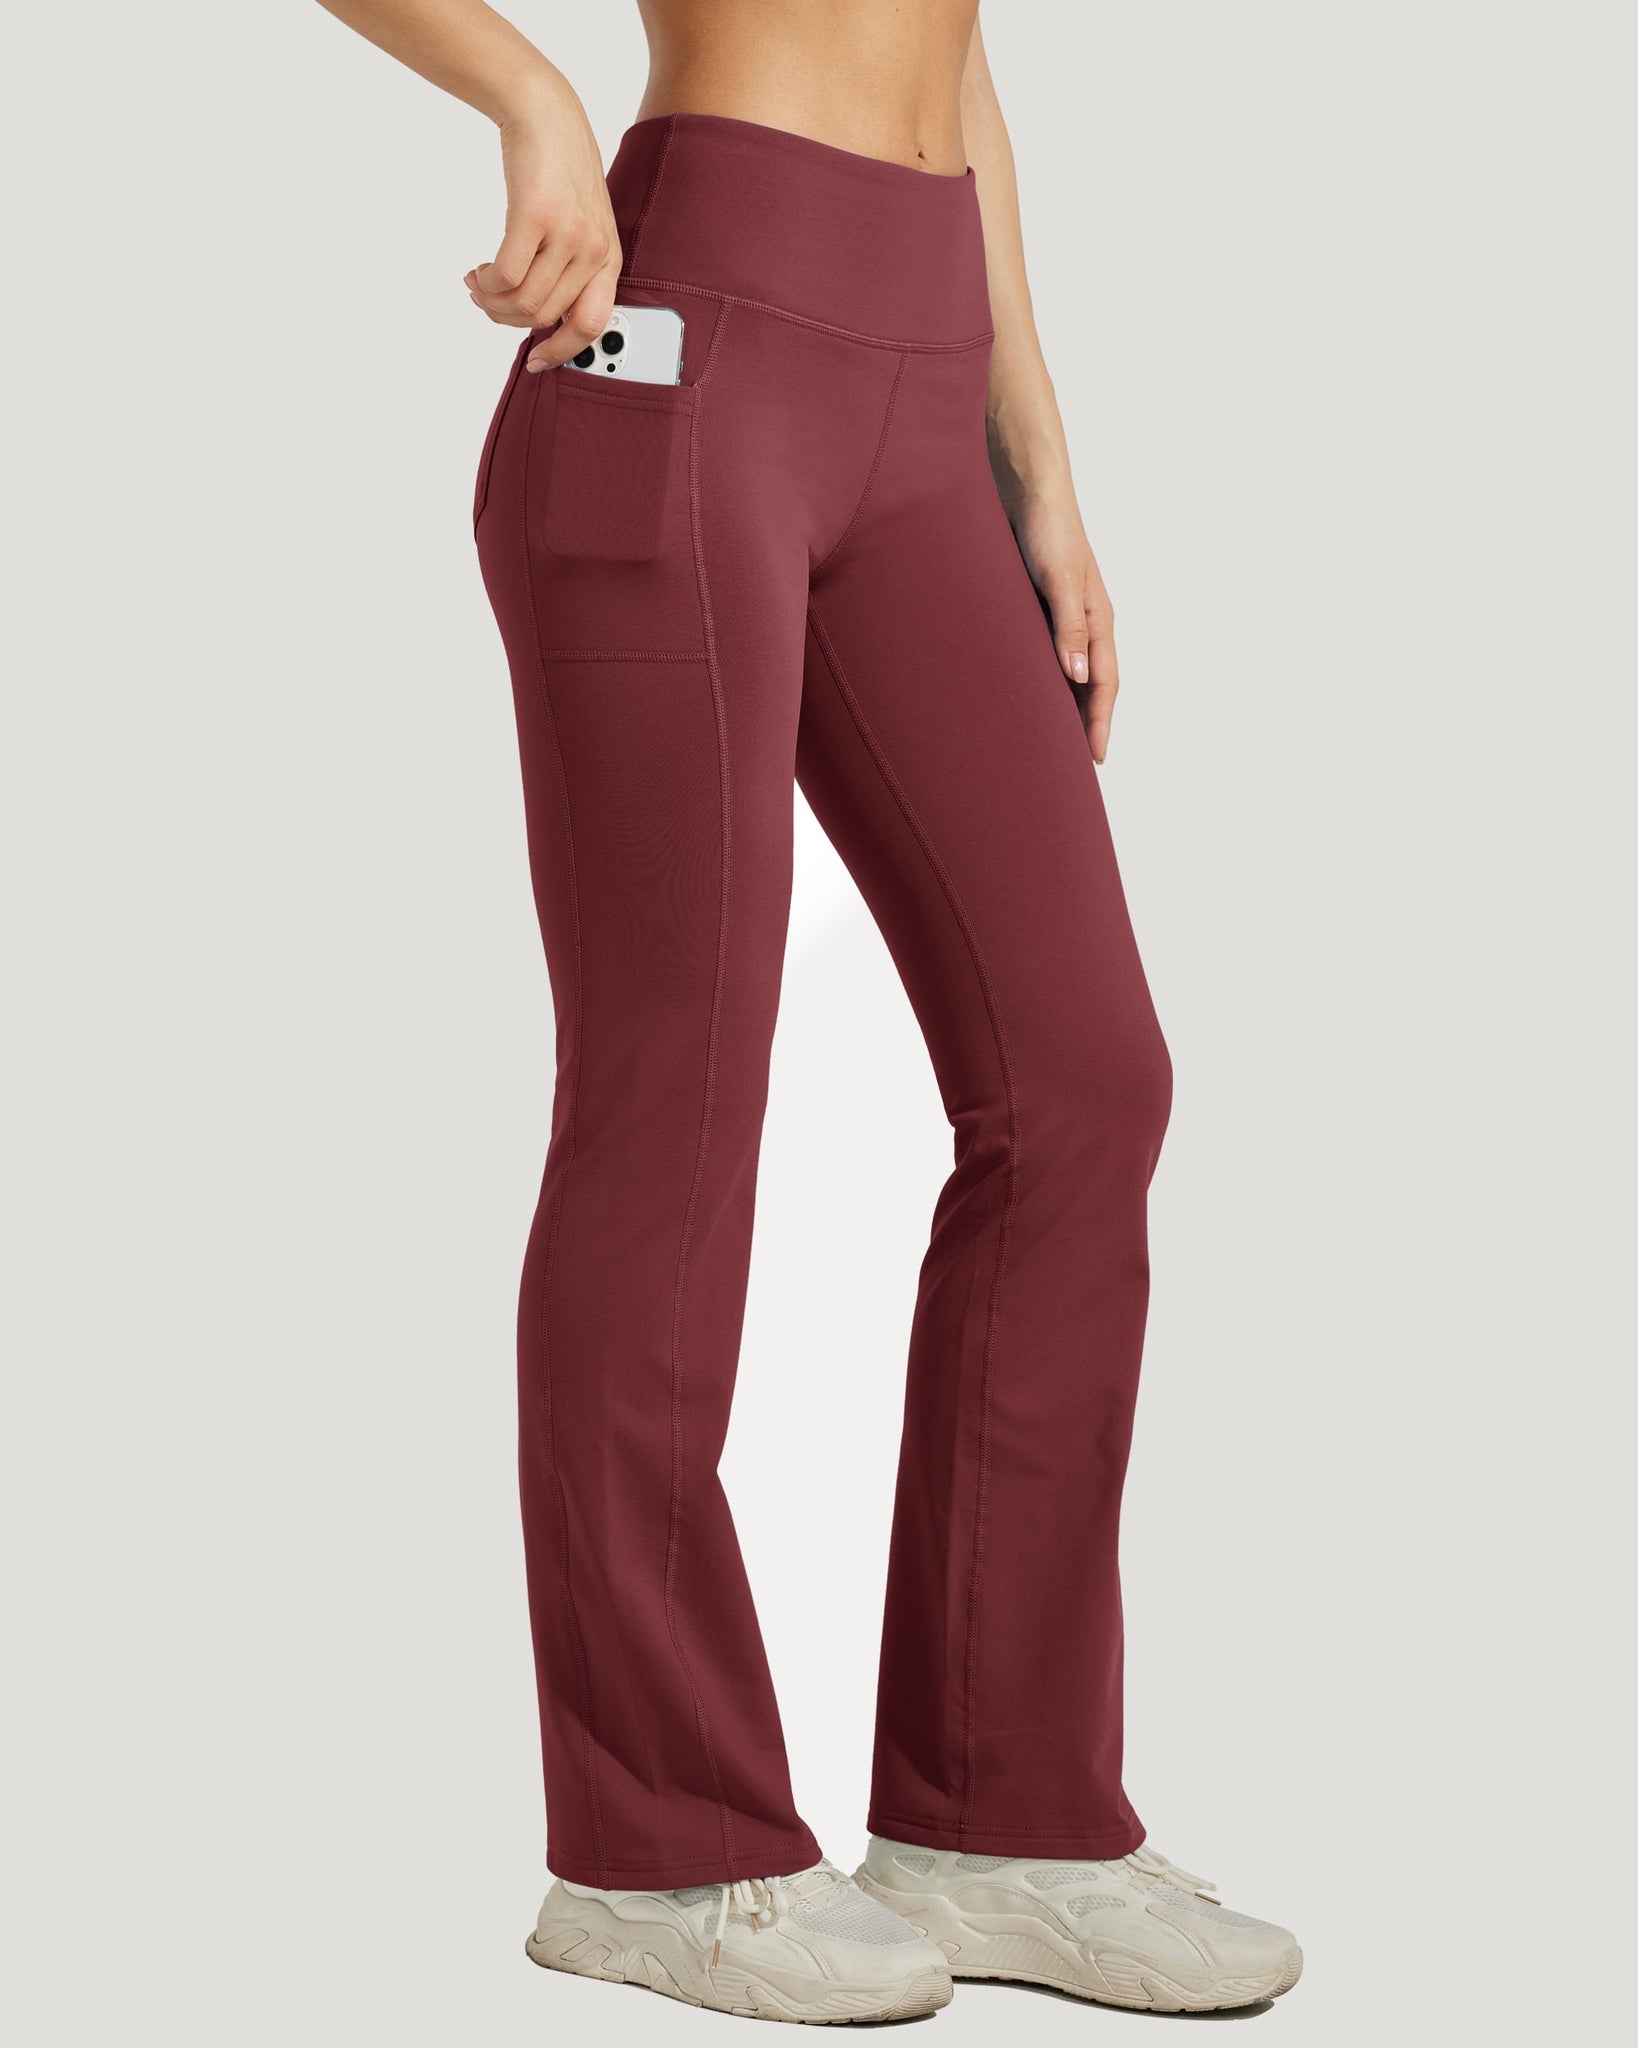 Women's Fleece Lined Bootcut Yoga Pants_WineRed_model3